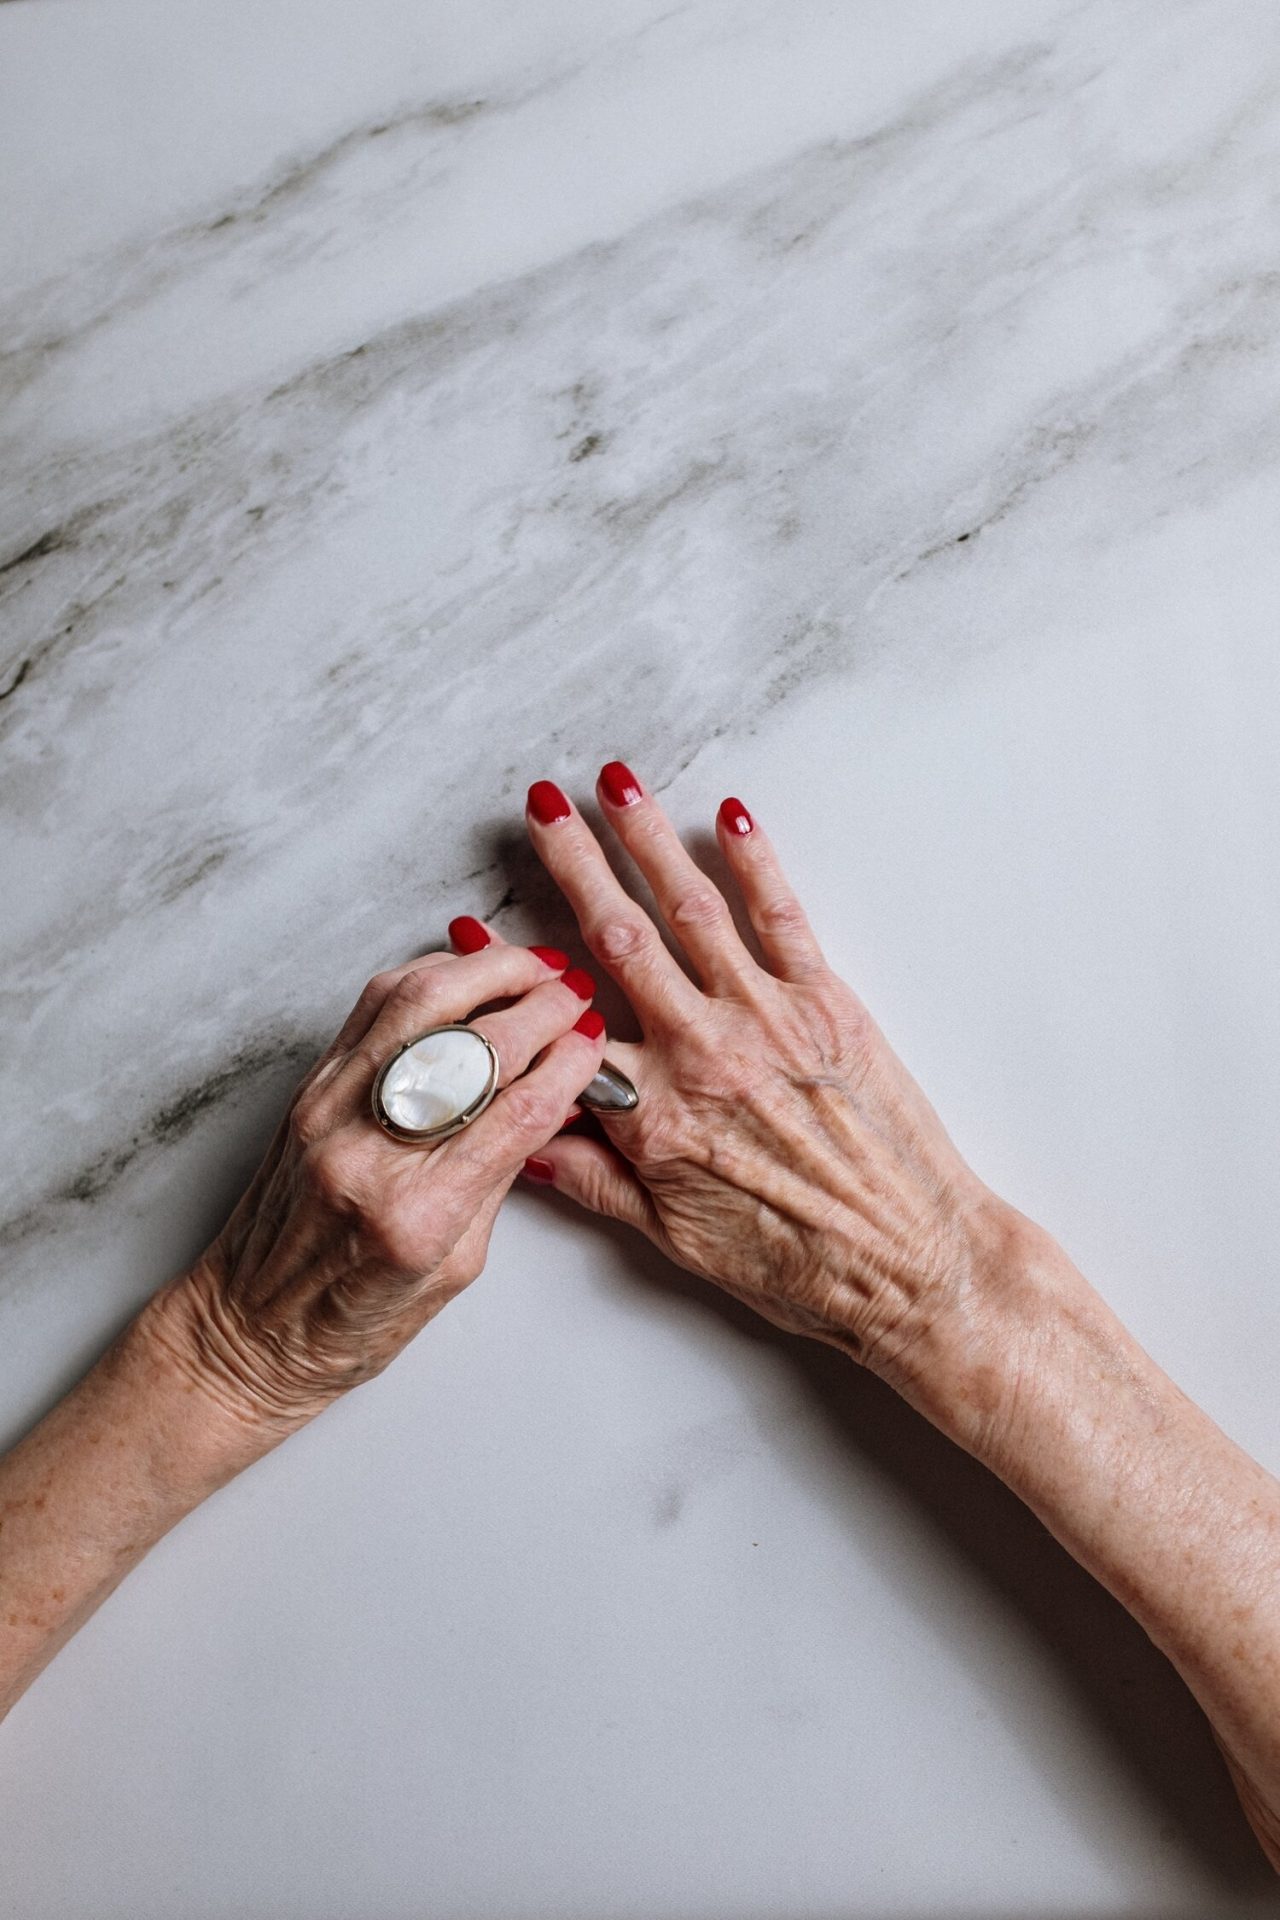 مع تقدمنا ​​في العمر، يمكن أن تفقد اليدين الحجم بسبب انخفاض الأنسجة تحت الجلد وفقدان الكولاجين